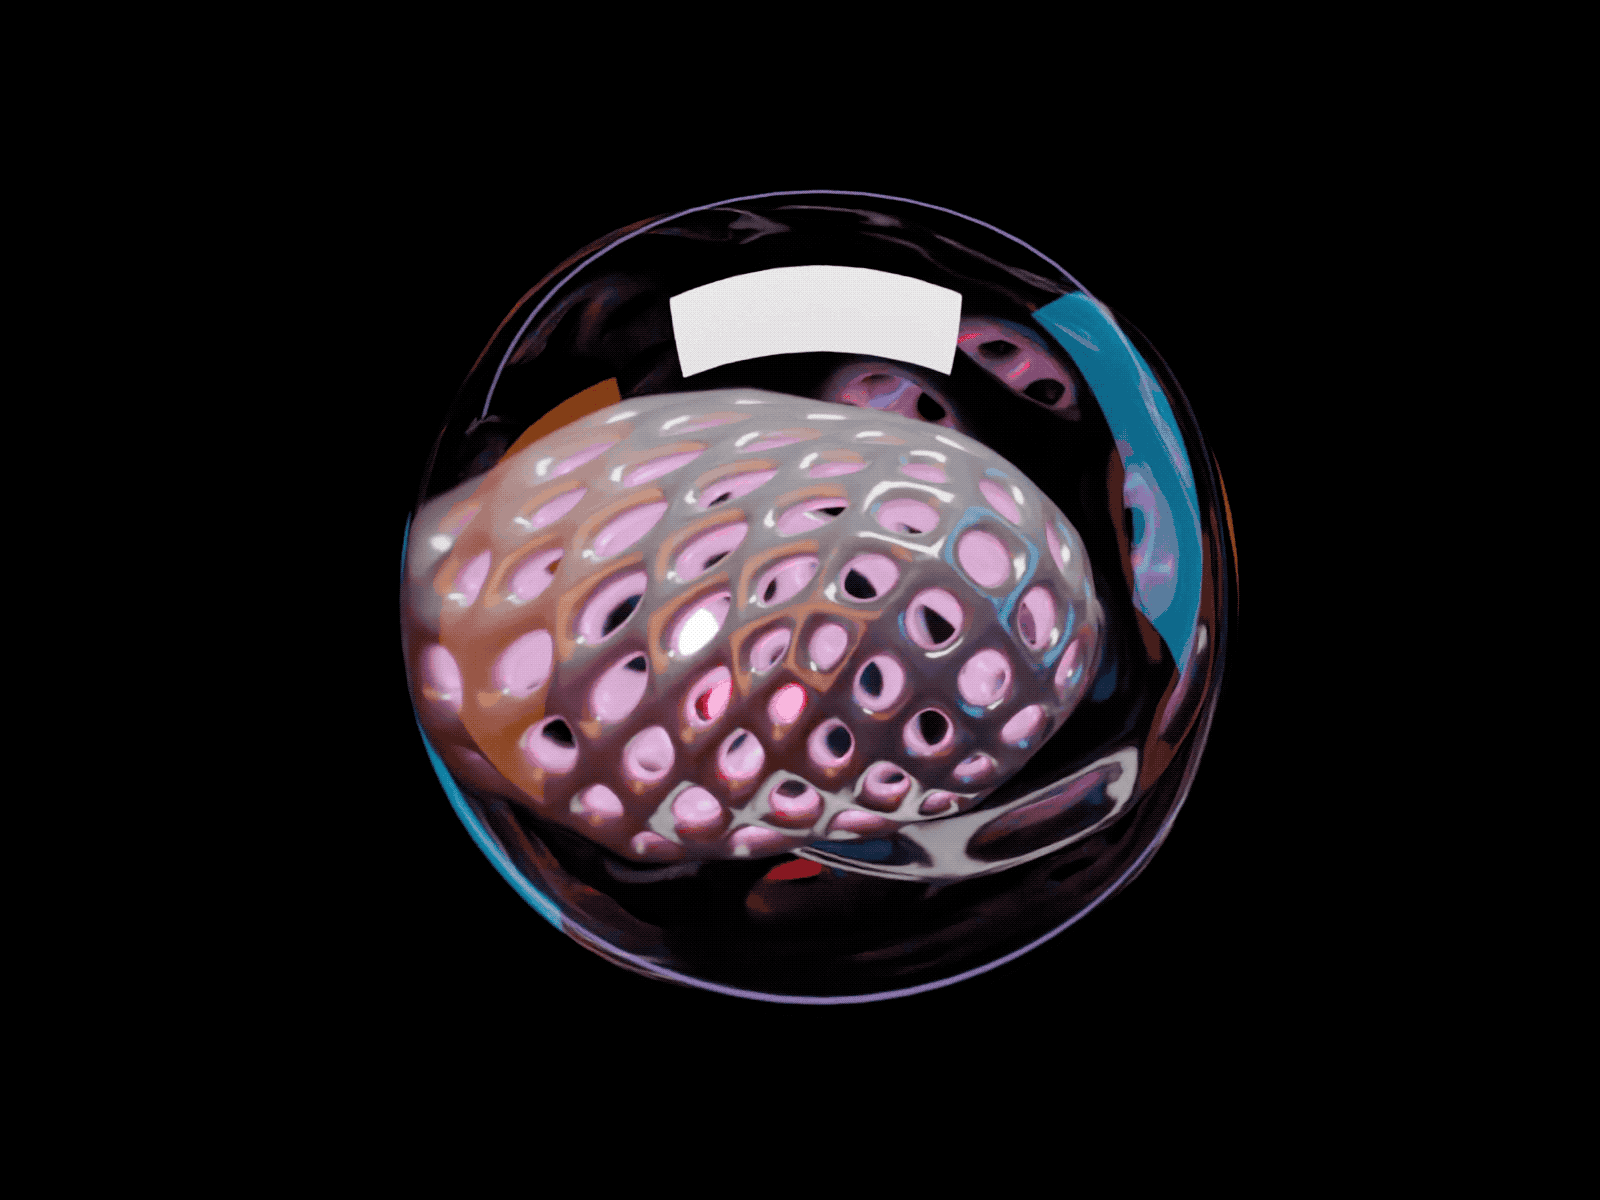 Sphere 3d 3d animation 3d art animation blender crystal dark dark mode glass lighting morph render sphere